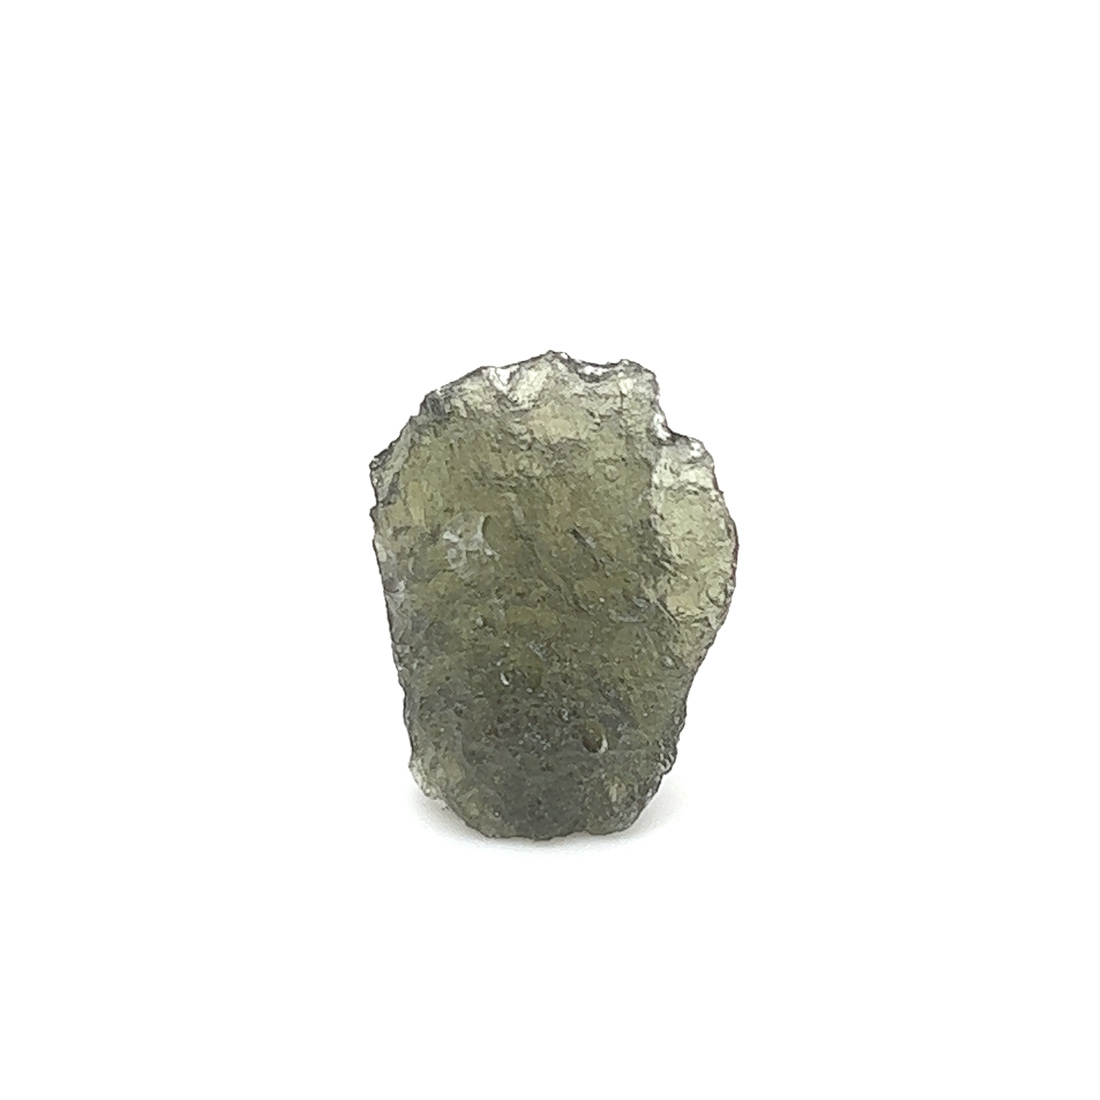 Genuine Moldavite Specimen k658__2022-07-22-14-22-47